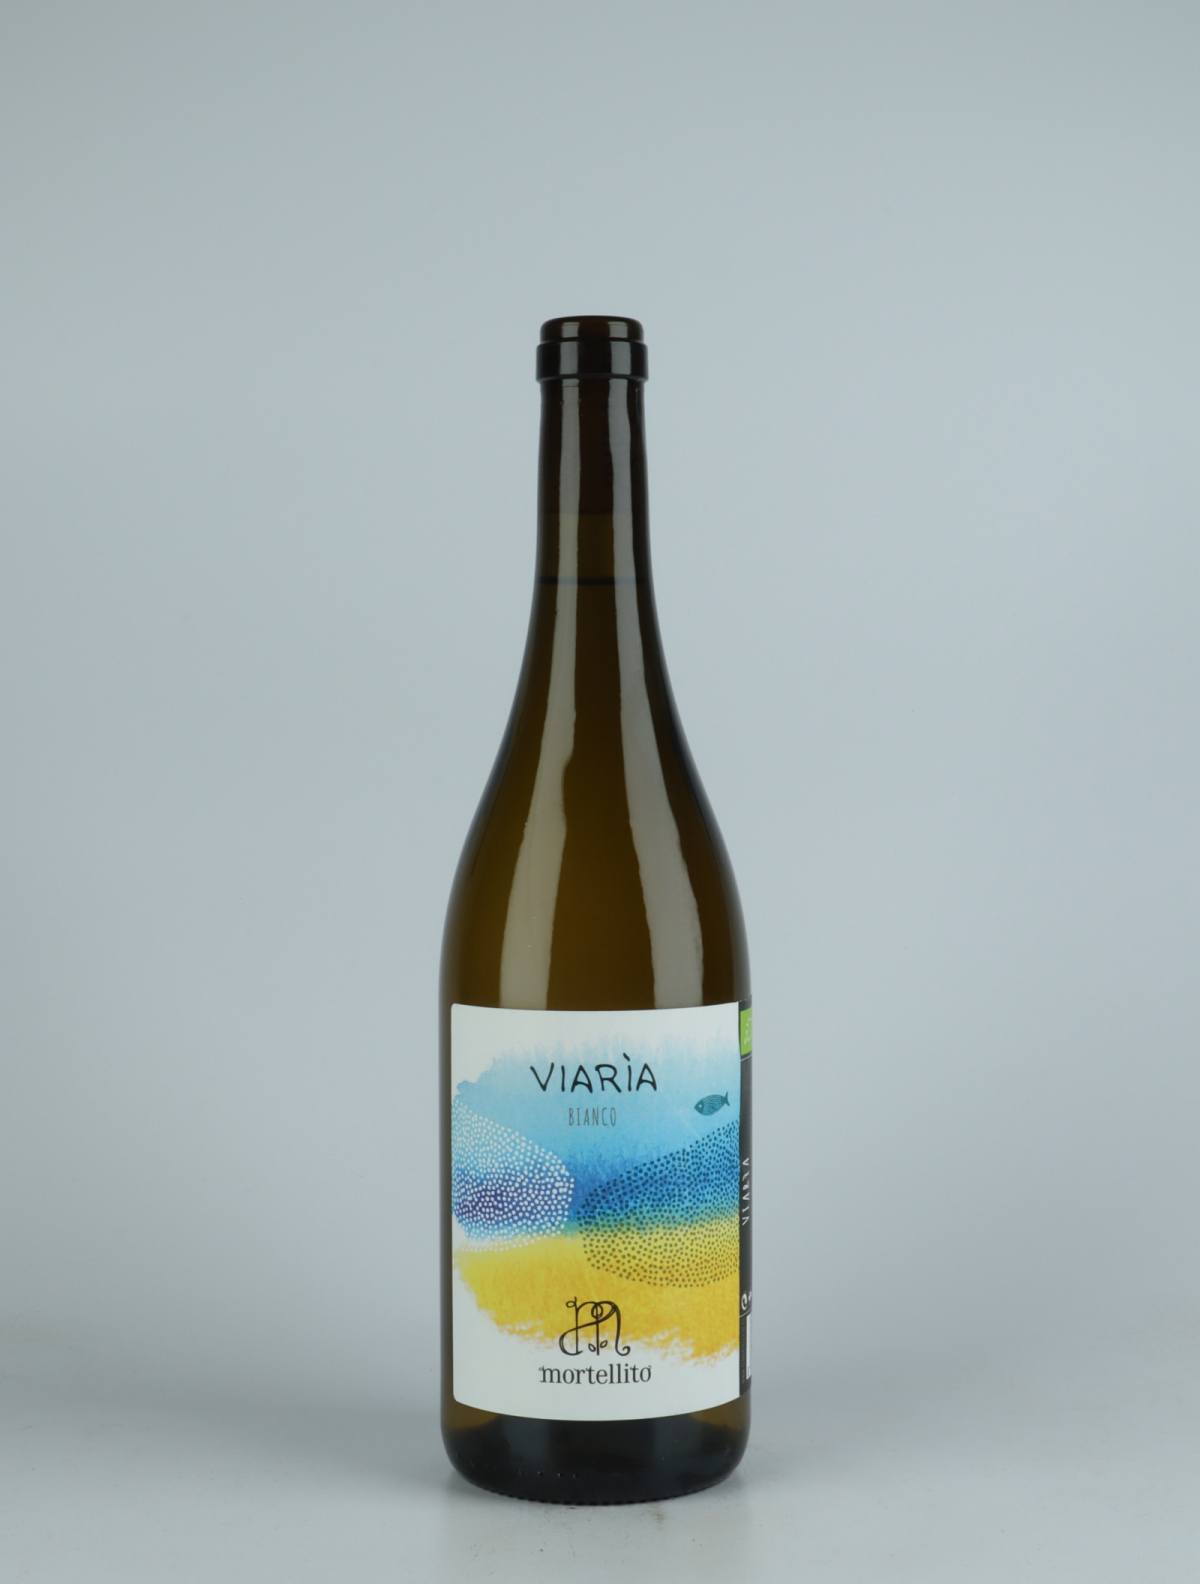 A bottle 2021 Viaria Orange wine from Il Mortellito, Sicily in Italy